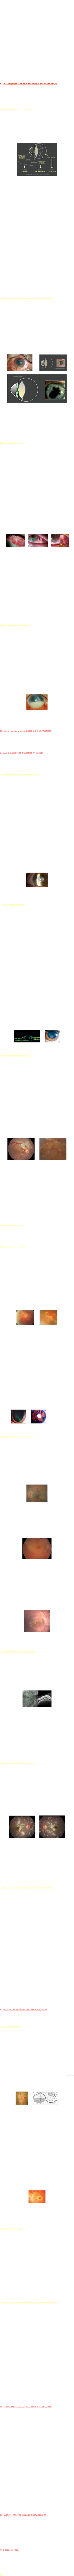 


Les urgences ophtalmologiques peuvent se répartir schématiquement en quatre grandes catégories : urgences traumatologiques (plaie du globe, corps étranger, brûlure, contusion), urgences à oeil rouge plus ou moins douloureux (abcès de cornée sous lentilles, glaucome aigu, conjonctivite virale), urgences avec altération de la vision (décollement de rétine, occlusions vasculaires rétiniennes, neuropathies optiques) et urgences neuro-vasculaires avec troubles oculomoteurs ou diplopie (dissection carotidienne, paralysie du III liée à un anévrysme compressif). Les “complications ophtalmologiques aiguës des maladies systémiques” regroupent un ensemble de pathologies d’une telle diversité sémiologique qu’elles peuvent s’apparenter à chacune de ces catégories. En effet, leurs origines extrêmement variées englobent des causes infectieuses (tuberculose, syphilis, toxoplasmose, herpès), tumorales (pseudo-uvéite lymphomateuse), vasculaires (rétinopathie hypertensive, Horton), métaboliques (oedème maculaire diabétique), inflammatoires pures (sarcoïdose, vasculopathie lupique), toxiques (uvéites médicamenteuses), neurologiques (sclérose en plaques) et même pseudo-traumatiques (perforation sclérale nécrosante au cours des polyarthrites rhumatoïdes sévères)! Par souci de clarté, et plutôt que d’établir un classement par étiologie, il paraît préférable d’aborder cette question si vaste par une approche pratique, basée sur les modes de présentation clinique devant faire rechercher telle ou telle cause spécifique. 

I. Les urgences avec oeil rouge ou douloureux
Les glaucomes aigus et kératites aiguës mis à part, les causes d’œil rouge et douloureux liées à des maladies de système sont dominées par les uvéites antérieures aiguës et les sclérites. Avant d’en distinguer les principales causes, il est nécessaire de rappeler la nomenclature internationale définie pour décrire les uvéites (SUN working group, 2004).

Les uvéites - définition et classification (figure 1)
Le terme d’uvéite désigne une inflammation intra-oculaire, pouvant toucher les segments antérieur (chambre antérieure, iris, corps ciliaires), intermédiaire (vitré) ou postérieur (rétine) du globe oculaire. Ses causes, extrêmement variées, peuvent être d’origine infectieuse, inflammatoire, tumorale (pseudo-uvéites), constituer des maladies isolées ou systémiques (association à d’autres organes atteints), ou encore rester d’origine inconnue ! 

￼
Figure 1 : Classification des uvéites selon le site primitif de l’inflammation (d’après le SUN)
(Illustration © M.Guedj)

Une uvéite antérieure est une inflammation dont le site primitif est le segment antérieur de l’œil - chambre antérieure, iris, corps ciliaires - . C’est ce type d’uvéite qui est responsable des symptômes rougeur et douleur. Une uvéite intermédiaire est une inflammation dont le site primitif est le vitré. Une uvéite postérieure est une inflammation dont le site primitif est la rétine ou la choroïde. Elle regroupe donc les entités de chorio-rétinite (au premier rang desquelles figure la toxoplasmose), rétinite, neuro-rétinite, et choroïdite -qui peut être focale, multifocale ou diffuse-. 
En cas d’inflammation primitive simultanée de la rétine (ou choroïde), du vitré et du segment antérieur, on parle alors de “panuvéite”. 
Il faut bien comprendre que la plupart des uvéites intermédiaires et postérieures peuvent se compliquer d’une extension antérieure de l’inflammation, et donc se manifester par un tableau d’œil rouge et douloureux. Par exemple, la toxoplasmose oculaire (uvéite postérieure) ou la sarcoïdose (à présentation classiquement intermédiaire et postérieure) peuvent souvent se présenter de manière bruyante -avec rougeur et douleur- par leur composante antérieure aiguë associée. Parallèlement, des uvéites antérieures très intenses peuvent se compliquer par contiguïté de hyalite ou d’œdème maculaire, et donc de baisse d’acuité visuelle, sans être considérées pour autant comme des uvéites postérieures.
Quoi qu’il en soit, les causes d’uvéites strictement antérieures liées à des maladies systémiques sont dominées par les uvéites liées à l’antigène HLA-B27 (classées au sein des spondylarthropathies) chez l’adulte. L’interrogatoire devra donc pister des signes évocateurs de spondylarthrite ankylosante (lombo-sciatalgies, talagies), de rhumatisme psoriasique, d’arthrite réactionnelle ou encore de maladies inflammatoires chroniques intestinales (MICI). 

1. Les uvéites antérieures aiguës liées à l’antigène HLA-B27
Elles constituent la cause la plus fréquente d’uvéite antérieure aiguë (52%), ces-dernières représentant le type majoritaire d’uvéites rencontré en pratique de ville (60%). Si 7% de la population générale sont porteurs de l’antigène HLA-B27, seul 1% de ces sujets B27+ sera atteint d’uvéite, statistique remontant à 13% en cas d’antécédents familiaux d’uvéite au 1er degré.   
Typiquement non granulomateuses (à précipités rétro-cornéens fins), unilatérales mais à bascule (touchant un œil par poussée avec alternance possible aux poussées suivantes), parfois à hypopion (sédiment de débris cellulaires inflammatoires en chambre antérieure), les uvéites HLA-B27+ sont volontiers fibrineuses et très synéchiantes (les synéchies irido-cristalliniennes sont des adhérences inflammatoires entre l’iris et la face antérieure du cristallin). 

￼           ￼  ￼
Figure 2 : Aspect clinique et éléments sémiologiques classiques d’une uvéite antérieure aiguë HLA B27+
(Illustrations © M.Guedj)

Son traitement est avant tout local, basé sur l’instillation horaire de collyres corticoïdes, avec décroissance progressive par paliers de quelques jours, et sur des agents mydriatiques pour prévenir ou faire céder des synéchies irido-cristalliniennes récemment formées.


2. Les sclérites et épisclérites
Une sclérite est une inflammation de la paroi du globe (la sclère) avec dilatation des vaisseaux scléraux, responsable de rougeur et douleurs intenses, qui est associée dans près de la moitié des cas à une maladie de système. Une épisclérite est une inflammation de la couche plus superficielle tapissant la sclère (l’épisclère) avec dilatation des vaisseaux épiscléraux, responsable de rougeur localisée et de douleurs très modérées voire inexistantes, qui est très rarement associée à une maladie de système. La différence entre ces deux entités peut donc être faite sur l’aspect clinique de la rougeur et l’intensité de la douleur (volontiers insomniante dans les sclérites), mais aussi grâce au test à la Néosynéphrine, vasoconstricteur local dont l’action permet de contracter seulement les vaisseaux épiscléraux -donc de faire disparaître la rougeur des épisclérites - mais pas les vaisseaux scléraux -inactif sur les sclérites-. Parmi les sclérites associées à une maladie de système (près de 50%), la polyarthrite rhumatoïde représente la première cause (soit plus de 30% des causes totales de sclérite), devant la maladie de Wegener (11%), les MICI (8%) et les polychondrites (4%) d’après Akpek et al. -Ophthalmology 2004-. Des causes infectieuses, dont le contexte est souvent plus manifeste, doivent également être recherchées (zona 11%, herpès 4%). Mais si les polyarthrites rhumatoïdes représentent 10 à 33% des cas de sclérite selon les études, moins de 1% des patients atteints de polyarthrite rhumatoïde connaissent un épisode de sclérite au cours de leur évolution. En revanche, lorsque la sclérite est dite nécrosante (ou scleromalacia perforans), la polyarthrite rhumatoïde est de loin la cause dominante. 
   ￼     ￼     ￼
Figure 3 (de gauche à droite) : sclérite nodulaire, sclérite nécrosante perforante et scléromalacie nécrosante sur polyarthrite rhumatoïde

L’atteinte nécrosante des sclérites est corrélée à une vascularite systémique extra-oculaire, donc à une mise en jeu du pronostic vital puisque la mortalité des patients non traités atteint jusqu’à 50% dans les 5 à 10 ans. En pratique, devant une sclérite nécrosante active, une hospitalisation est à organiser en urgence pour débuter des bolus de corticoïdes et de cyclophosphamide. 
Les sclérites classiques moins sévères (antérieures diffuses et nodulaires) peuvent répondre à un traitement par AINS oraux pour les moins graves et nécessitent parfois une corticothérapie orale en cure courte. Dans tous les cas, un bilan étiologique est à prescrire dès le premier épisode, avec facteurs rhumatoïdes, anticorps anti-CCP et ANCA notamment.
A l’opposé, les épisclérites, peu ou pas douloureuses et sans menace visuelle, ne nécessitent pas de bilan (hors épisodes trop fréquents) et guérissent spontanément dans la plupart des cas, avec une évolution émaillée de récurrences simples.


3. Les endophtalmies endogènes
La grande majorité des endophtalmies (réponse inflammatoire à l’invasion d’un germe dans l’œil) est d’origine exogène, c’est-à-dire qu’elles font suite à une chirurgie oculaire ou à une plaie du globe. Le terme d’endophtalmie endogène (2 à 15% des endophtalmies) désigne la dissémination à l’œil par voie hématogène d’un germe issu d’un foyer septique extra-oculaire. C’est en ce sens qu’elles peuvent être rattachées aux maladies systémiques. Elles touchent le plus souvent des sujets débilités (immunodéprimés, diabétiques, cancéreux) et sont soit d’origine bactérienne (suite à une chirurgie abdominale ou urologique par exemple) soit fongique (Candida albicans en tête, sur toxicomanie IV, endocardite ou dans un contexte d’antibiothérapie prolongée en soins intensifs). 
Le bilan infectieux est large (prélèvements infectieux multiples, de la porte d’entrée si possible, écho-doppler cardiaque, hémocultures -milieu de Sabouraud-, ponction de chambre antérieure et biopsie vitréenne) et le traitement antibiotique probabiliste, systémique et intra-oculaire (injections intra-vitréennes) à moduler selon les facteurs de risque et le foyer suspecté en attendant les résultats des prélèvements. 
￼
Figure 4 : Hypopion géant au cours d’une endophtalmie endogène avec tableau de panuvéite



II. Les urgences avec BAISSE DE LA VISION
Deux types de baisse de vision sont à distinguer : la baisse de l’acuité visuelle (ou performance visuelle centrale), et l’altération du champ visuel (ou scotome) se manifestant comme une tache noire ou un voile, central ou périphérique. 

A. AVEC BAISSE DE L’ACUITE VISUELLE
De très nombreuses maladies systémiques peuvent être responsables de baisse d’acuité visuelle. Seules les causes les plus fréquemment rencontrées en pratique seront développées dans ce chapitre. 

1. L’uvéite de l’arthrite juvénile idiopathique
Principale cause d’uvéite chronique chez le jeune enfant, volontiers bilatérale et insidieuse, l’inflammation oculaire complique 20 à 30% des formes d’arthrite juvénile idiopathique sans qu’il n’existe de parallélisme entre la gravité des atteintes oculaire et articulaire. L’uvéite survient en moyenne un an après les premiers signes articulaires et a la particularité d’évoluer silencieusement (à œil blanc et indolore, avec baisse d’acuité visuelle progressive), justifiant un examen systématique à la lampe à fente chez tout enfant avec symptômes d’arthrite chronique de plus de 6 semaines. Lorsque l’enfant se plaint de baisse de vision, des complications sont souvent déjà constituées (œdème maculaire, cataracte, kératopathie en bandelettes, séclusion pupillaire avec synéchies sur 360° et hypertonie oculaire brutale), synonymes d’amblyopie (perte d’acuité visuelle définitive) en l’absence de traitement rapide. Celui-ci est avant tout local (corticoïdes topiques horaires en décroissance progressive, associés à des cocktails mydriatiques pour tenter de vaincre les synéchies irido-cristalliniennes) avec contrôle systématique à 24-48 H si l’atteinte est sévère initialement. Précisons que les injections péri-oculaires (latéro-bulbaire ou sous-ténonienne) en cas d’œdème maculaire sont en pratique très difficiles chez le jeune enfant et nécessitent une courte anesthésie générale. Enfin, un traitement systémique par corticoïdes oraux et immunosuppresseurs (méthotrexate) ou anti-TNF (adalimumab) -à visée d’épargne cortisonée- doit être débuté sans attendre dans les formes sévères mal contrôlées, à cause de la menace de complications oculaires et d’amblyopie rapide. Grâce à cette escalade thérapeutique plus précoce et à un meilleur dépistage, le taux de cécité lié à l’arthrite juvénile idiopathique a diminué de 15-38% dans les années 80 à 5% de nos jours.
￼
Figure 5 : Synéchies irido-cristalliniennes, cataracte et “kératopathie en bandelettes” 
au cours d’une arthrite juvénile idiopathique


2. L’uvéite de la sarcoïdose
Première cause d’uvéite intermédiaire (inflammation primitive du vitré avec hyalite), typiquement associée à des vascularites rétiniennes périphériques et des lésions de choroïdite multifocale, la sarcoïdose peut aussi se compliquer fréquemment d’œdème maculaire responsable de baisse de la vision. Le tableau peut également prendre la forme d’une uvéite antérieure granulomateuse, volontiers hypertone et synéchiante, et dans ce cas douloureuse. Lorsque l’origine sarcoïdosique d’une uvéite est fortement suspectée, un dosage de l’enzyme de conversion de l’angiotensine, un scanner thoracique à la recherche d’adénopathies médiastinales et un quantiféron ou une IDR tuberculinique -éliminant une tuberculose comme diagnostic différentiel classique- sont demandés rapidement. Ce bilan peut ensuite être complété par des biopsies des glandes salivaires accessoires ou des biopsies bronchiques étagées au cours d’une endoscopie avec lavage broncho-alvéolaire, à la recherche d’un granulome inflammatoire sans nécrose caséeuse signant le diagnostic histologique de sarcoïdose. Malgré cela, de nombreux cas ayant une présentation ophtalmologique typique de sarcoïdose restent sans preuve anatomopathologique et sont considérés comme “sarcoïdose présumée” et traités comme tels. Le traitement, uniquement suspensif, n’a pas pour but de faire disparaître toute trace d’inflammation mais de limiter les conséquences graves sur l’œil d’une inflammation non contrôlée (œdème maculaire, œdème papillaire, vascularites sévères, hypertonie). Certaines formes bénignes (hyalite minime sans retentissement visuel, vascularites périphériques isolées, adénopathies médiastinales hilaires simples asymptomatiques) sont d’ailleurs en abstention thérapeutique complète. A l’inverse, les formes graves -avec œdème maculaire bilatéral notamment- nécessitent d’emblée un traitement. Celui-ci est basé sur les corticoïdes, traitement de référence de la sarcoïdose, par voie orale en décroissance progressive (prednisone) mais aussi par injections intra- ou péri-oculaires (triamcinolone ou dexaméthasone) pour le traitement local de l’œdème maculaire. Un traitement immunosuppresseur (le méthotrexate en première intention) est associé pour les formes de sarcoïdose cortico-dépendantes ou en cas de complications des corticoïdes.
￼         ￼
Figure 6 : Aspect OCT d’un œdème maculaire cystoïde et précipités rétro-cornéens granulomateux au cours d’une sarcoïdose oculaire

3. L’uvéite de la maladie de Behçet
Atteinte ophtalmologique grave dont les conséquences peuvent être rapidement dévastatrices sur la vision, la maladie de Behçet est bâtie sur faisceau d’éléments, au premier rang desquels figure l’aphtose buccale, critère indispensable au diagnostic. Les ulcères génitaux (définissant l’“aphtose bipolaire” s’ils sont associés à des aphtes buccaux), la pseudo-folliculite cutanée (pustules non centrées par un poil), les troubles génito-urinaires, digestifs et articulaires en constituent les atteintes classiques mais peu spécifiques si elles ne sont pas associées entre elles ou à un terrain évocateur (homme jeune, originaire du bassin méditerranéen -Turquie en tête- ou d’Asie, et porteur de l’antigène HLA-B51). Les atteintes vasculaires de la maladie (thromboses artérielles et veineuses, vascularites), particulièrement graves quand elles concernent le système nerveux central (neuro-Behçet) peuvent également toucher les vaisseaux rétiniens et conditionner le pronostic visuel.  L’uvéite est en effet un des critères clefs du diagnostic et est inaugurale de la maladie dans un cas sur cinq en moyenne. Non granulomateuse (à précipités rétro-cornéens fins), l’uvéite peut comporter une part antérieure aiguë et douloureuse, souvent à hypopion, mais toute sa sévérité dépend de l’atteinte postérieure (rétinienne), caractérisée par des foyers nécrotico-hémorragiques et des vascularites, et dont la localisation centrale peut faire chuter rapidement l’acuité visuelle.

￼        ￼
Figure 7: Thrombose veineuse spectaculaire et foyers nécrotico-hémorragiques 
d’une atteinte rétinienne de  maladie de Behçet

Si la colchicine (pour l’aphtose), l’aspirine et les corticoïdes oraux sont suffisants pour les formes non sévères de la maladie et sans atteinte ophtalmologique, l’arsenal thérapeutique doit s’intensifier fortement en cas d’atteinte rétinienne même minime de Behçet. A la corticothérapie orale et aux anti-agrégeants plaquettaires, s’ajoutent alors des immunosuppresseurs (l’azathioprine en première intention) améliorant le pronostic visuel à long terme. Des bolus de cyclophosphamide peuvent même être associés à des bolus initiaux de Solumédrol dans les formes très sévères avec atteinte maculaire, avant un relais par azathioprine et prednisone en traitement d’entretien de plusieurs années. Le suivi est placé sous la menace constante de récidives homo- ou controlatérales, justifiant la plupart du temps le maintien au long cours de faibles doses de cortisone et d’immunosuppresseurs.

4. Les uvéites infectieuses
Si la première cause d’uvéite infectieuse postérieure reste la toxoplasmose oculaire, dont l’atteinte est strictement limitée à l’œil chez le sujet immunocompétent, de nombreuses causes infectieuses systémiques peuvent se compliquer d’uvéite avec baisse d’acuité visuelle. 
La famille des herpes viridae 
Les virus Varicelle-Zona (VZV) et Herpes Simplex (HSV) peuvent entraîner des rétinopathies virales nécrosantes dont l’évolution est très rapide et le pronostic redoutable. On parle de nécrose rétinienne aiguë (ARN, pour Acute Retinal Necrosis) chez l’immunocompétent, et de nécrose rétinienne externe progressive (PORN, pour Progressive Outer Retinal Necrosis) chez l’immunodéprimé. Si ces deux entités proviennent de la réactivation d’une infection herpétique latente, elles se distinguent par la réponse immunitaire de l’hôte : extrêmement inflammatoire pour l’immunocompétent, mais rétinite silencieuse et sans hyalite chez l’immunodéprimé. L’évolution habituelle de ces rétinites est sévère car elles peuvent se compliquer rapidement de nécrose du pôle postérieur, d’atrophie optique, de décollement de rétine et donc de cécité. Le pronostic est conditionné par la précocité du diagnostic et de la mise en route du traitement antiviral (Aciclovir ou Valaciclovir) mais reste malgré tout redoutable chez l’immunodéprimé.

￼          ￼
Figure 8: Foyers confluents périphériques de rétinite virale, avec “front de nécrose” bien visible sur l’image de droite. Le diagnostic différentiel entre une ARN et une maladie de Behçet ou un lymphome intraoculaire primtif peut être particulièrement difficile.  

Par ailleurs la gravissime rétinite à CMV, infection opportuniste définissant l’entrée en stade SIDA du VIH+ au taux de CD4 inférieur à 50 cellules/mm3, est considérée comme une entité distincte. Sa fréquence et sa corrélation avec un pronostic vital très sombre ont été transformés par la généralisation des trithérapies antivirales dans les pays développés. 

De manière plus courante et moins dramatique, les virus de la famille herpes peuvent être responsables d’atteintes du segment antérieur (cornée, iris, chambre antérieure). De la classique ulcération cornéenne dendritique -au test à la fluorescéine- aux segmentites herpétiques antérieures avec hypoesthésie cornéenne, endothélite, atrophie irienne et hypertonie oculaire dans les formes typiques, les atteintes liées aux virus HSV ou VZV -dans le cadre d’un zona du ganglion de Gasser- sont fréquentes et se compliquent volontiers de récurrences. Elles nécessitent donc souvent, après le traitement d’attaque par valaciclovir (3g/j la première semaine), une corticothérapie topique et un traitement antiviral prolongés (valaciclovir 1 à 2 cp/j au long cours) dans les formes très récidivantes cortico-dépendantes et “valaciclo-dépendantes”. 
                        ￼        ￼
Figure 9: Kératite herpétique dendritique (au test à la fluorescéine) et atrophie irienne 
au cours d’atteintes herpétiques du segment antérieur.

Les infections bactériennes systémiques
Les endophtalmies endogènes mises à part (traitées plus haut), certaines infections bactériennes peuvent déclencher des uvéites. Citons la tuberculose, souvent de forme latente, sans signe ophtalmologique pathognomonique (très rares tubercules de Bouchut) et dont le dépistage passe par une IDR à la tuberculine et une radiographie de thorax dans le bilan initial de la plupart des uvéites. En cas de forte suspicion, un quantiféron et un scanner thoracique pourront être demandés d’emblée, suivis des examens invasifs et histologiques recherchant le Mycobacterium Tuberculosis. Dans les rares cas où celui-ci est mis en évidence, une quadrithérapie classique s’impose. Dans les autres cas (présumés), un traitement d’épreuve de l’uvéite, encore peu consensuel, sera débuté au moindre doute et parfois également sous la forme d’une quadrithérapie. 
￼
Figure 10: Tubercules de Bouchut au fond d’œil au cours d’une uvéite tuberculeuse


La syphilis, à ne jamais omettre et simulatrice par définition, est plus facile à identifier biologiquement et à traiter. La sérologie TPHA-VDRL fait partie du bilan de routine classique des uvéites et le traitement de référence par pénicilline est efficace dans la grande majorité des cas. En cas d’atteinte chorio-rétinienne, le traitement doit être calqué sur celui de la neurosyphilis (pénicilline IV). 
￼
Figure 11: Infiltrat chorio-rétinien placoïde du pôle postérieur d’origine syphilitique

D’autres atteintes bactériennes avec complications oculaires sont possibles. Citons la maladie de Lyme, la leptospirose, la brucellose et la rickettsiose, aux présentations cliniques multiples devant faire préciser avec soin l’anamnèse (recherche de morsure de tique, d’escarre cutanée, de rash fébrile...) de toute uvéite d’aspect inhabituel amenant à suspecter une pathologie d’inoculation.
Enfin, l’uvéite liée à l’infection à Bartonella Henselae dans la maladie des griffes du chat peut présenter un aspect clinique de “neurorétinite stellaire” caractéristique et est généralement de bon pronostic même sans traitement (d’autant plus qu’aucun antibiotique n’a fait la preuve de son utilité).
￼
Figure 12: Fond d’œil avec neurorétinite stellaire caractéristique de la maladie des griffes du chat



5. La maladie de Vogt-Koyanagi-Harada
Cause d’uvéite rare en Europe mais plus fréquente en Asie ou chez les latino-américains, la maladie de Vogt-Koyanagi-Harada désigne une forme particulière d’uvéo-méningo-encéphalite, présumée auto-immune et dirigée contre les mélanocytes. L’uvéite est classiquement bilatérale, granulomateuse et synéchiante, avec atteinte postérieure caractéristique à type de décollements séreux rétiniens à la phase aiguë, évoluant vers une dépigmentation plus tardive du fond d’oeil (‘sunset glow fundus’) et du limbe. L’association typique mais inconstante avec une méningite lymphocytaire, une surdité de perception et un vitiligo doit être systématiquement recherchée. 
￼
Figure 13: Décollements séreux rétiniens multiples objectivés sur la coupe OCT 
dans une maladie de Vogt-Koyanagi-Harada

Le traitement repose sur une corticothérapie systémique à fortes doses en urgence, souvent initiée par des bolus de solumédrol, puis orale en décroissance douce. Cette attitude thérapeutique de première intention est bien souvent suffisante pour contrôler la maladie, généralement de bon pronostic grâce à une prise en charge précoce. Des immunosuppresseurs (type azathioprine) seront associés en seconde intention en cas de rebond inflammatoire postérieur précoce en cours de décroissance des corticoïdes oraux, ou d’emblée en cas d’état initial trop évolué (prise en charge tardive). Des rebonds inflammatoires limités au segment antérieur sont en revanche fréquents en fin de décroissance, et doivent être traités localement par corticothérapie topique simple.

6. Les vascularites rétiniennes du lupus
Les atteintes ophtalmologiques du lupus érythémateux disséminé sont dominées par les “vascularites rétiniennes”, inflammation de la paroi des vaisseaux suspectée cliniquement au fond d’œil et diagnostiquée formellement sur une angiographie à la fluorescéine, mais ne reposant jamais sur une preuve histologique comme pour les vascularites systémiques. Ces vascularites rétiniennes ne sont responsables de baisse de vision que si elles sont compliquées d’œdème maculaire ou papillaire, de hyalite dense ou d’occlusion vasculaire avec ischémie rétinienne. 
La rétinopathie lupique peut prendre la forme typique de “rétinopathie de Purtscher”, décrite à l’origine dans les suites d’un traumatisme non direct sur l’œil et caractérisé par l’association au fond d’œil de nodules cotonneux et de taches blanches (fleckens) répartis autour de la papille. 
￼      ￼
Figure 14: Nodules cotonneux bilatéraux de répartition péripapillaire (rétinopathie de Purtscher)

Ce tableau (dit “pseudo-Purtscher” ou “Purtscher like” s’il ne survient pas en contexte traumatique) doit faire rechercher une pancréatite aiguë et des vascularites systémiques (lupus et syndrome des antiphospholipides en premier lieu, mais aussi sclérodermie, dermatomyosite, syndrome hémolytique et urémique, purpura thrombotique thrombocytopénique, cryoglobulinémie…).
Le traitement reste celui de l’étiologie et pourra comprendre corticoïdes, anticoagulants, plasmaphérèses ou immunosuppresseurs. 


7. Les complications du diabète et de l’hypertension artérielle
Pour finir cette partie, citons le diabète et l’hypertension artérielle (pouvant être qualifiés d’atteintes “systémiques”) dont l’atteinte rétinienne peut entraîner une baisse de vision rapide. 
  Le diabète peut être responsable de baisse d’acuité visuelle de deux manières :
- par les complications d’une rétinopathie diabétique proliférante
La rétinopathie diabétique (périphérique) se classe selon son stade : “non proliférante” (minime, modérée ou sévère) avant l’apparition de néovascularisation rétinienne, ou “proliférante” dès l’apparition des premiers néovaisseaux. La prolifération anarchique de ces néovaisseaux peut se compliquer d’hémorragie intra-vitréenne (s’ils saignent dans le vitré), de décollement rétinien tractionnel (s’ils tirent sur la rétine) ou encore de glaucome néovasculaire. Cette dernière complication fait intervenir le passage de VEGF (facteur de croissance endothélial vasculaire, sécrété par les zones ischémiques de rétine périphérique) du vitré en chambre antérieure, stimulant la prolifération de néovaisseaux iriens (“rubéose irienne”) qui en envahissant l’angle irido-cornéen vont bloquer l’accès au trabéculum et faire monter brutalement la pression intraoculaire, avec un tableau d’œil rouge, douloureux et très dur au toucher.
- par la maculopathie diabétique
Indépendante du stade de la rétinopathie, la maculopathie (œdème maculaire) est la première cause de baisse d’acuité visuelle chez le diabétique. Son traitement repose sur des injections intra-vitréennes d’anti-VEGF ou de triamcinolone.
Dans tous les cas, un équilibre glycémique et tensionnel rigoureux est essentiel à tous les stades  chez le patient diabétique.  
  La rétinopathie hypertensive peut se compliquer d’œdème papillaire, responsable de baisse de vision (stade III). Si elle n’a pas de répercussion sur la vision dans sa forme chronique, la rétinopathie hypertensive aiguë est symptomatique et doit être prise en charge en urgence par traitement anti-hypertenseur. 


B. AVEC ALTERATION DU CHAMP VISUEL
L’amputation d’une partie du champ visuel est au mieux objectivée par un champ visuel manuel de Goldmann mais peut être dépistée par une confrontation rapide (au doigt) dans un contexte d’urgence. 
1. La maladie de Horton
Les atteintes ophtalmologiques graves de la maladie de Horton sont dominées par les névrites optiques ischémiques antérieures aiguës (NOIAA, 90%) suivies des occlusions de l’artère centrale de la rétine (OACR, 10%). 
Une NOIAA est un infarctus de l’artériole vascularisant la tête du nerf optique dont l’aspect au fond d’œil est celui d’un œdème papillaire circonscrit de petites hémorragies en flammèches. Si elle est liée le plus souvent à une artériosclérose chez un patient âgé aux facteurs de risque cardio-vasculaires, la NOIAA doit faire éliminer une artérite inflammatoire de Horton par la demande d’une CRP en urgence et la recherche des signes cliniques caractéristiques de la maladie (céphalées, douleurs de pseudo-polyarthrite rhizomélique, hyperesthésie du cuir chevelu, claudication intermittente de la mâchoire et asthénie chez un sujet de plus de 60 ans). Elle est responsable d’un scotome d’abord altitudinal (amputation de l’hémi-champ visuel supérieur ou inférieur selon un axe horizontal coupé au cordeau) pouvant s’étendre rapidement jusqu’à la cécité complète, et même se bilatéraliser en cas d’atteinte controlatérale. 
￼       ￼
Figure 15: Aspect de névrite optique ischémique antérieure aiguë (NOIAA) au fond d’œil et scotome altitudinal de l’hémi-champ visuel inférieur gauche sur découverte de maladie de Horton

En cas de CRP élevée, et sans attendre les résultats de la biopsie d’artère temporale (affirmant le diagnostic), un traitement corticoïde fortes doses doit être débuté dans l’urgence, idéalement par bolus de Solumédrol sur 3 jours, relayés par une corticothérapie orale par prednisone 1 mg/kg/j en décroissance très progressive avec mesures associées habituelles et traitement anti-agrégeant plaquettaire par Aspirine. Une fois seulement le traitement débuté, la pratique rapide d’une biopsie d’artère temporale permettra de confirmer le diagnostic sur l’examen histologique du fragment prélevé (3 cm en théorie même s’il reste difficile en pratique de prélever plus de 1,5 cm) mettant en évidence une panartérite giganto-cellulaire segmentaire et focale infiltrant les trois tuniques avec nécrose fibrinoïde de la media. 
Autre complication possible mais moins fréquente de la maladie de Horton, l’occlusion de l’artère centrale de la rétine (OACR) est comme les NOIAA le plus souvent liée à une artériosclérose banale du sujet polyathéromateux. Une CRP en urgence est néanmoins la règle et la prise en charge en cas d’élévation anormale de celle-ci est la même que pour une NOIAA, l’objectif étant moins de traiter les dommages visuels sur l’œil malade (presque toujours irréversibles) que de prévenir une atteinte controlatérale. 

￼
Figure 16: Occlusion de l’artère centrale de la rétine (OACR) 
avec pâleur ischémique du pôle postérieur et macula “rouge cerise”




2. La sclérose en plaques
 D’une part, la sclérose en plaques peut être responsable d’uvéite intermédiaire avec hyalite et engainements vasculaires rétiniens, le plus souvent peu symptomatique et ne nécessitant pas de traitement particulier en l’absence d’œdème maculaire associé. Si elle entraîne un œdème maculaire important, symptomatique et bilatéral, le traitement sera initié par des bolus de solumédrol, parfois relayés par corticothérapie orale et/ou immunosuppresseurs, mais pour lequel les anti-TNF sont contre-indiqués.
 D’autre part, la sclérose en plaques peut se compliquer de scotome central d’apparition rapide en cas de névrite optique rétro-bulbaire (NORB), à objectiver sur un champ visuel de Goldmann. En cas de baisse de vision importante, l’administration de bolus de Solumédrol (1 g/j sur 3 jours) accélère la récupération fonctionnelle. En revanche ces bolus ne doivent pas ici être relayés par une corticothérapie orale qui multiplierait par trois le risque de récidive de NORB dans les deux ans. L’IRM cérébrale (et médullaire) permet d’identifier une plaque démyélinisante active sur le trajet du nerf optique concerné et de rechercher d’autres lésions associées ou d’âge différent, témoins d’une dissémination temporo-spatiale dans les formes typiques de sclérose en plaques.

3. Les atteintes oculaires iatrogènes des traitements systémiques
Elles ne rentrent pas directement dans le cadre de ce sujet mais il est important de rappeler que la rifabutine et le pamidronate sont des pourvoyeurs notoires d’uvéites, ainsi que de sclérites pour les biphosphonates.
Par ailleurs, certaines manifestations paradoxales d’uvéites survenant ou s’aggravant sous anti-TNF (étanercept en tête) ont été décrites, chez des malades traités pour spondylarthropathies (associées à des uvéites HLA-B27+) mais aussi chez des patients atteints de polyarthrite rhumatoïde (maladie non inductrice d’uvéite)! Ainsi, l’utilisation d’infliximab ou d’adalimumab est à préférer à l’étanercept comme traitement des uvéites B27 réfractaires avec atteinte extra-ophtalmologique, de même qu’un switch de l’étanercept pour l’une de ces deux molécules (ou pour un anti-CD20 dans les polyarthrites rhumatoïdes) est à recommander en cas d’exacerbation paradoxale d’uvéite sous traitement anti-TNF. 
Enfin, il existe des toxicités directes de certains médicaments: l’éthambutol peut induire des neuropathies optiques. Quant au Plaquenil, il est responsable de maculopathie (irréversible une fois constituée) dont les premiers signes sont dépistés sur le champ visuel maculaire central (Humphrey 10.2 des 10° centraux) et l’électrorétinogramme multifocal. Ces deux examens doivent être pratiqués dans l’année d’introduction du traitement, chaque année en alternance pendant les 5 premières années, puis tous les 6 à 8 mois après cinq ans de traitement (surveillance plus rapprochée à mesure que la dose cumulée augmente). 



III. TROUBLES OCULO-MOTEURS ET DIPLOPIE
La survenue d’une diplopie binoculaire doit avant tout faire éliminer 3 urgences : 
Un anévrysme de la terminaison de la carotide interne ou de l’artère communicante postérieure, comprimant le nerf oculomoteur (III) au niveau de la base du crâne avec pour conséquence une paralysie du III extrinsèque (paralysie oculomotrice et ptosis) et intrinsèque (mydriase aréactive) douloureuse.
Une maladie de Horton, pouvant se manifester par un III extrinsèque douloureux.
Une hypertension intracrânienne, avec souvent paralysie du VI (nerf abducens) non localisatrice et œdème papillaire de stase au fond d’œil si l’HTIC est assez prolongée.
Ainsi, une imagerie cérébrale (angio-IRM au mieux) et une CRP sont à demander en urgence devant un tableau de diplopie binoculaire d’apparition brutale. 
Parmi les autres causes moins urgentes et à la symptomatologie généralement plus progressive, citons le diabète (neuropathie ischémique du III et du VI, pouvant parfois simuler une cause neuro-vasculaire), la sclérose en plaques (ophtalmoplégie inter-nucléaire par atteinte de la bandelette longitudinale postérieure), le macro-adénome hypophysaire compressif (plus volontiers responsable d’hémianopsie bi-temporale que de diplopie), la myasthénie (diplopie et ptosis variable dans la journée) et la maladie de Basedow. Dans le cas de cette dernière, l’orbitopathie basedowienne (exophtalmie >18 mm, axile, bilatérale et symétrique, réductible, indolore avec asynergie oculo-palpébrale) n’entraîne pas de diplopie ou de trouble oculomoteur dans sa forme non compliquée. L’orbitopathie maligne, complication grave du Basedow, est en revanche douloureuse, non réductible et surtout associée à une paralysie oculomotrice avec diplopie. Elle impose un scanner urgent, une corticothérapie intraveineuse rapide et parfois même un traitement chirurgical ou une radiothérapie rétro-oculaire.

IV. ATTEINTES PSEUDO-TRAUMATIQUES
Parmi les causes et exemples déjà mentionnés plus haut, signalons encore que les polyarthrites rhumatoïdes compliquées de sclérites nécrosantes peuvent prendre la forme d’atteintes pseudo-traumatiques pré-perforantes du globe oculaire (voir figures 3b et 3c) et que les tableaux de rétinopathie de Purtscher doivent, en l’absence de traumatisme crânio-thoracique ou des os longs, faire rechercher des vascularites systémiques (lupus, SAPL, SHU…) ou une pancréatite aiguë (voir figure 13).

V. CONCLUSION
La synthèse de cette longue question peut être proposée sous la forme d’un tableau rappelant les principales atteintes ophtalmologiques rencontrées selon les causes systémiques les plus fréquentes.
Ce tableau ne sera pas fait.

FIN 

	